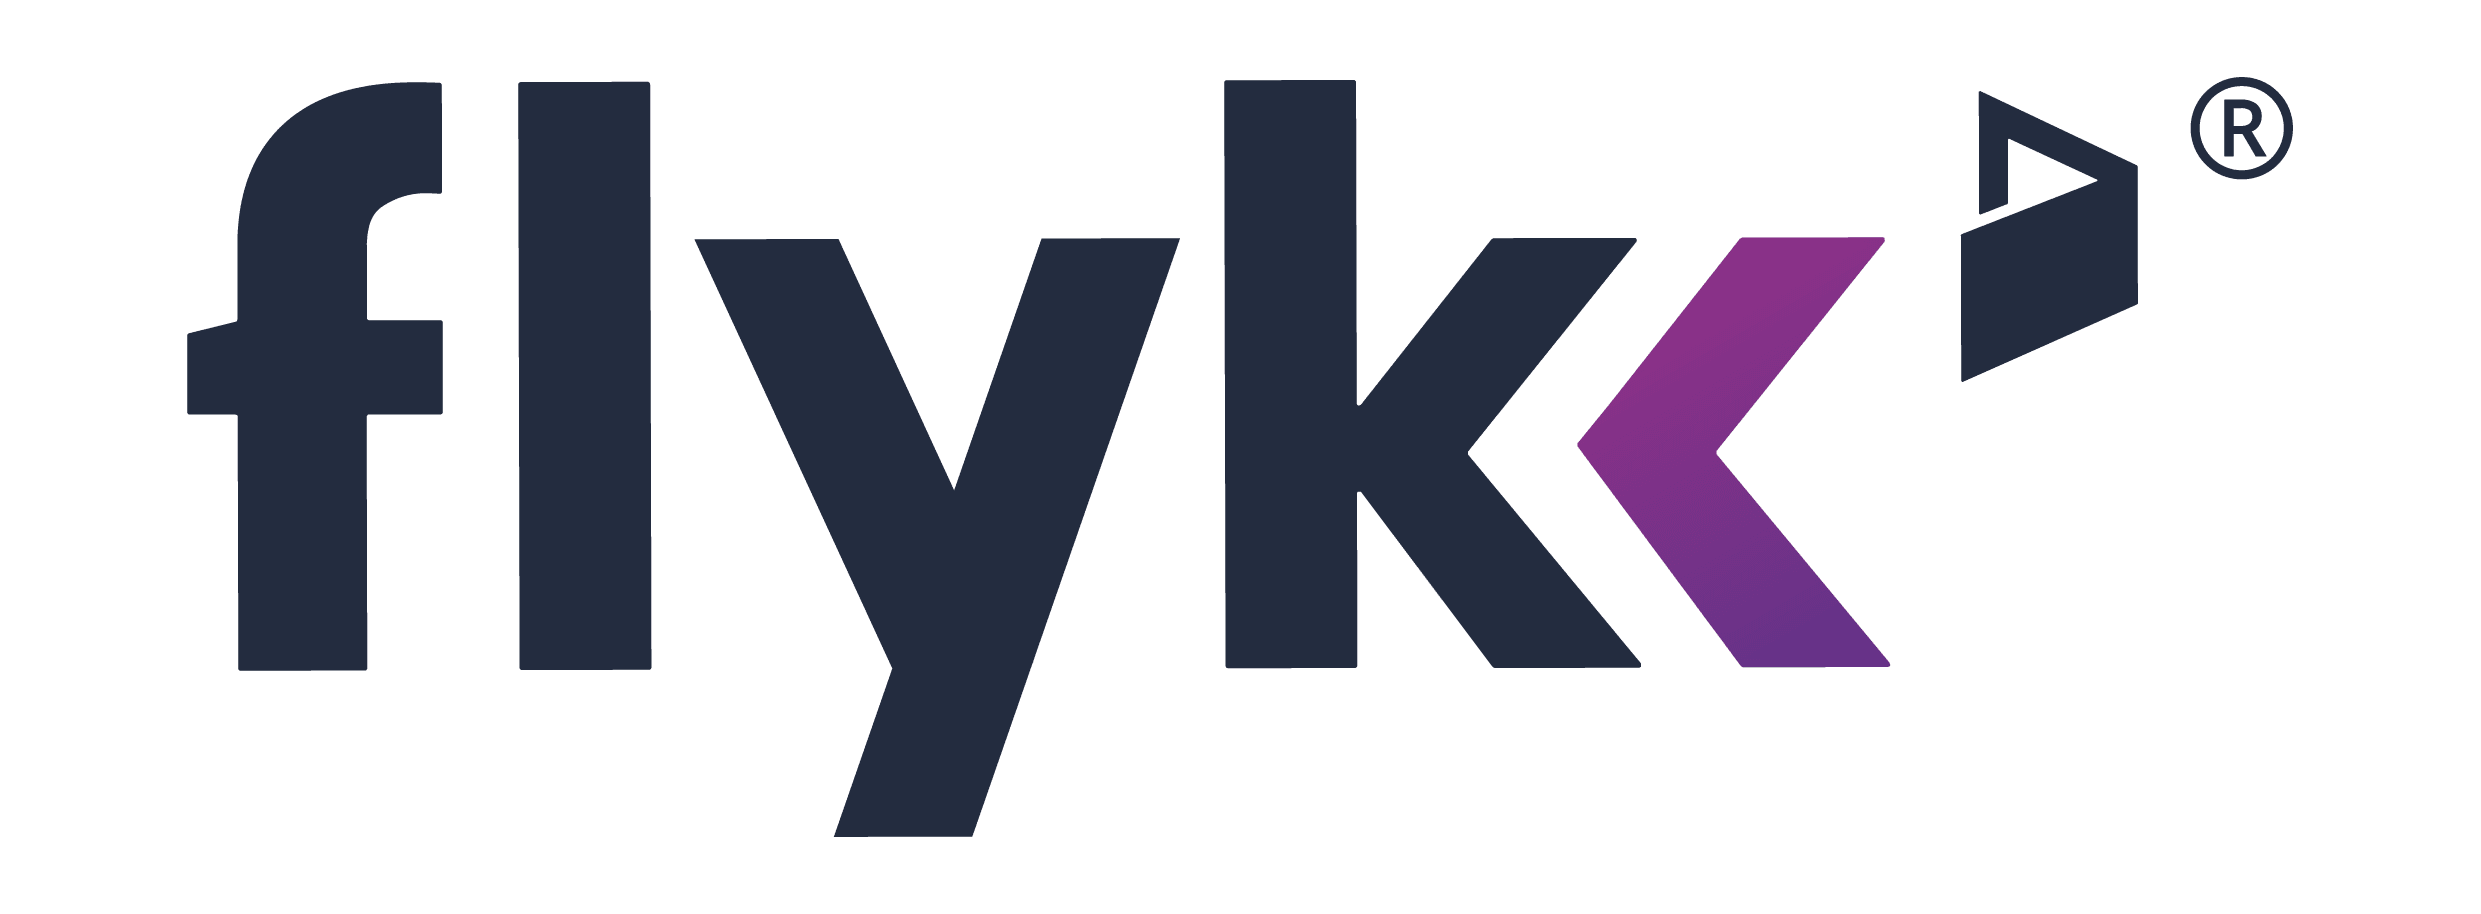 I migliori casinò online che accettano Flykk